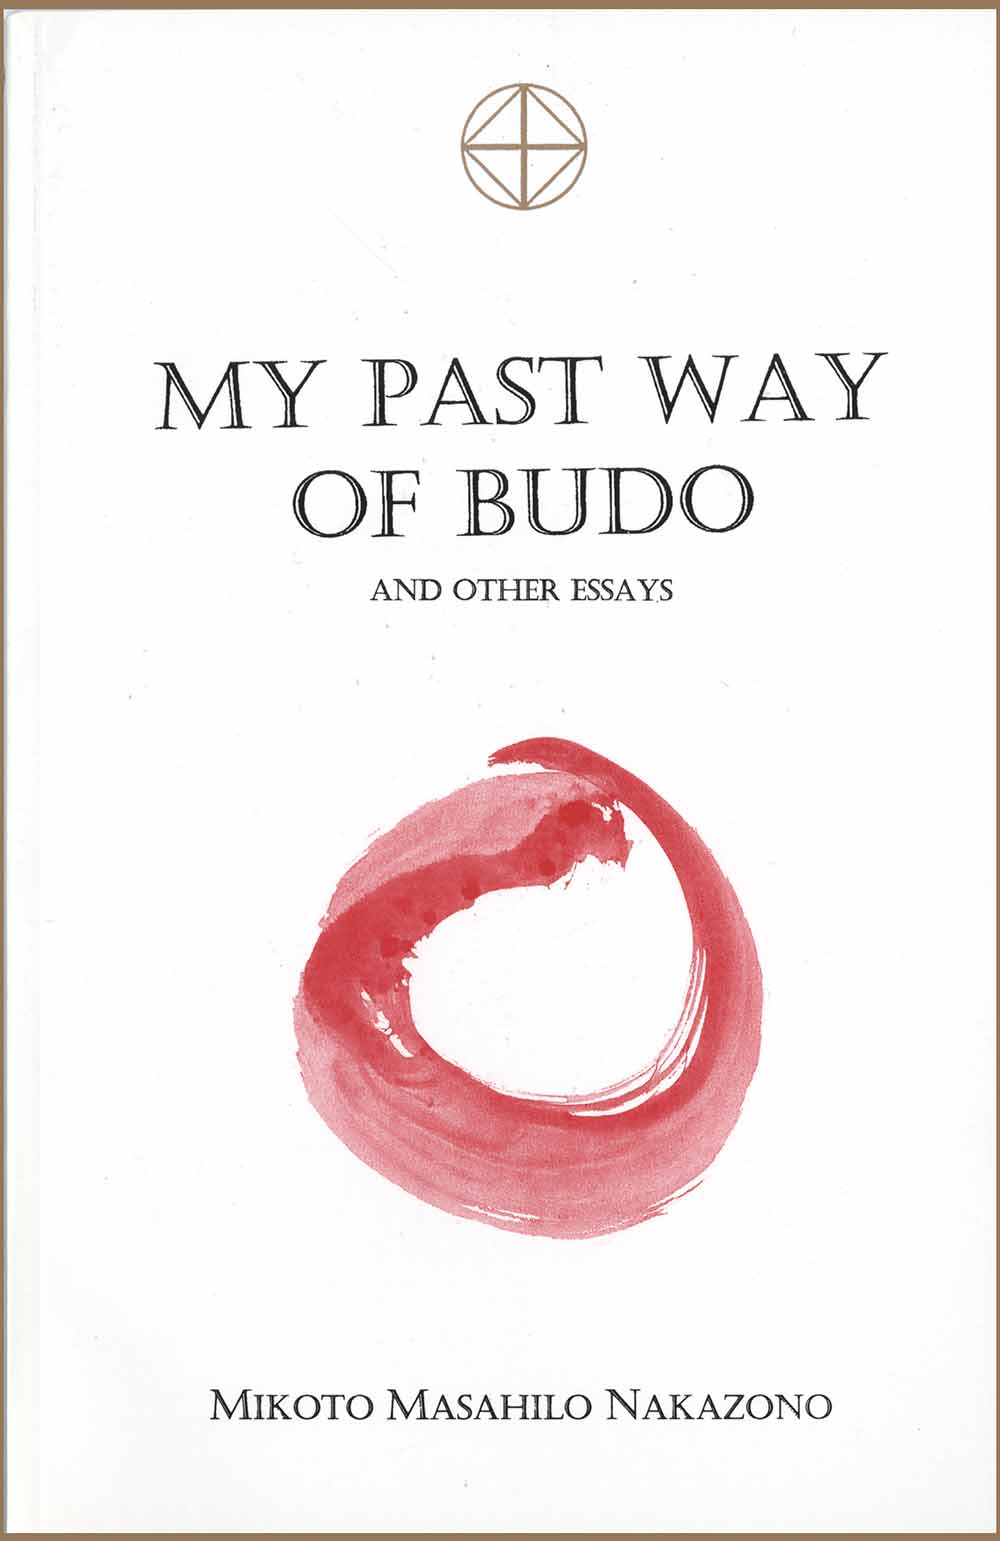 My Past Way of Budo Book by Mikoto Masahilo Nakazono - Budovideos Inc